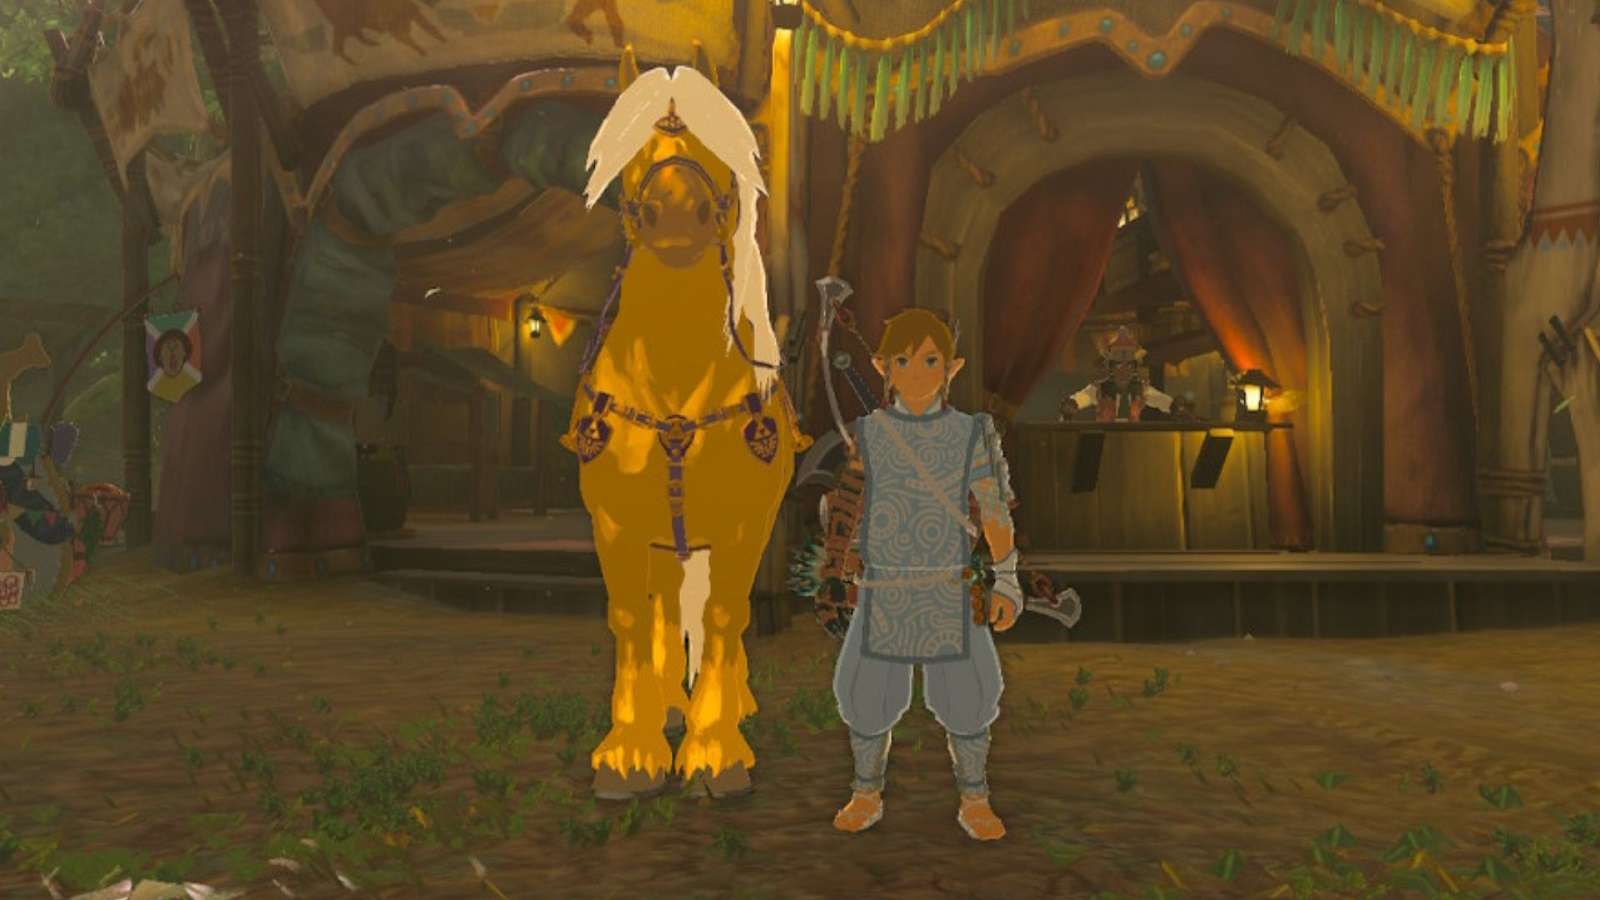 Link standing next to Zelda's golden horse